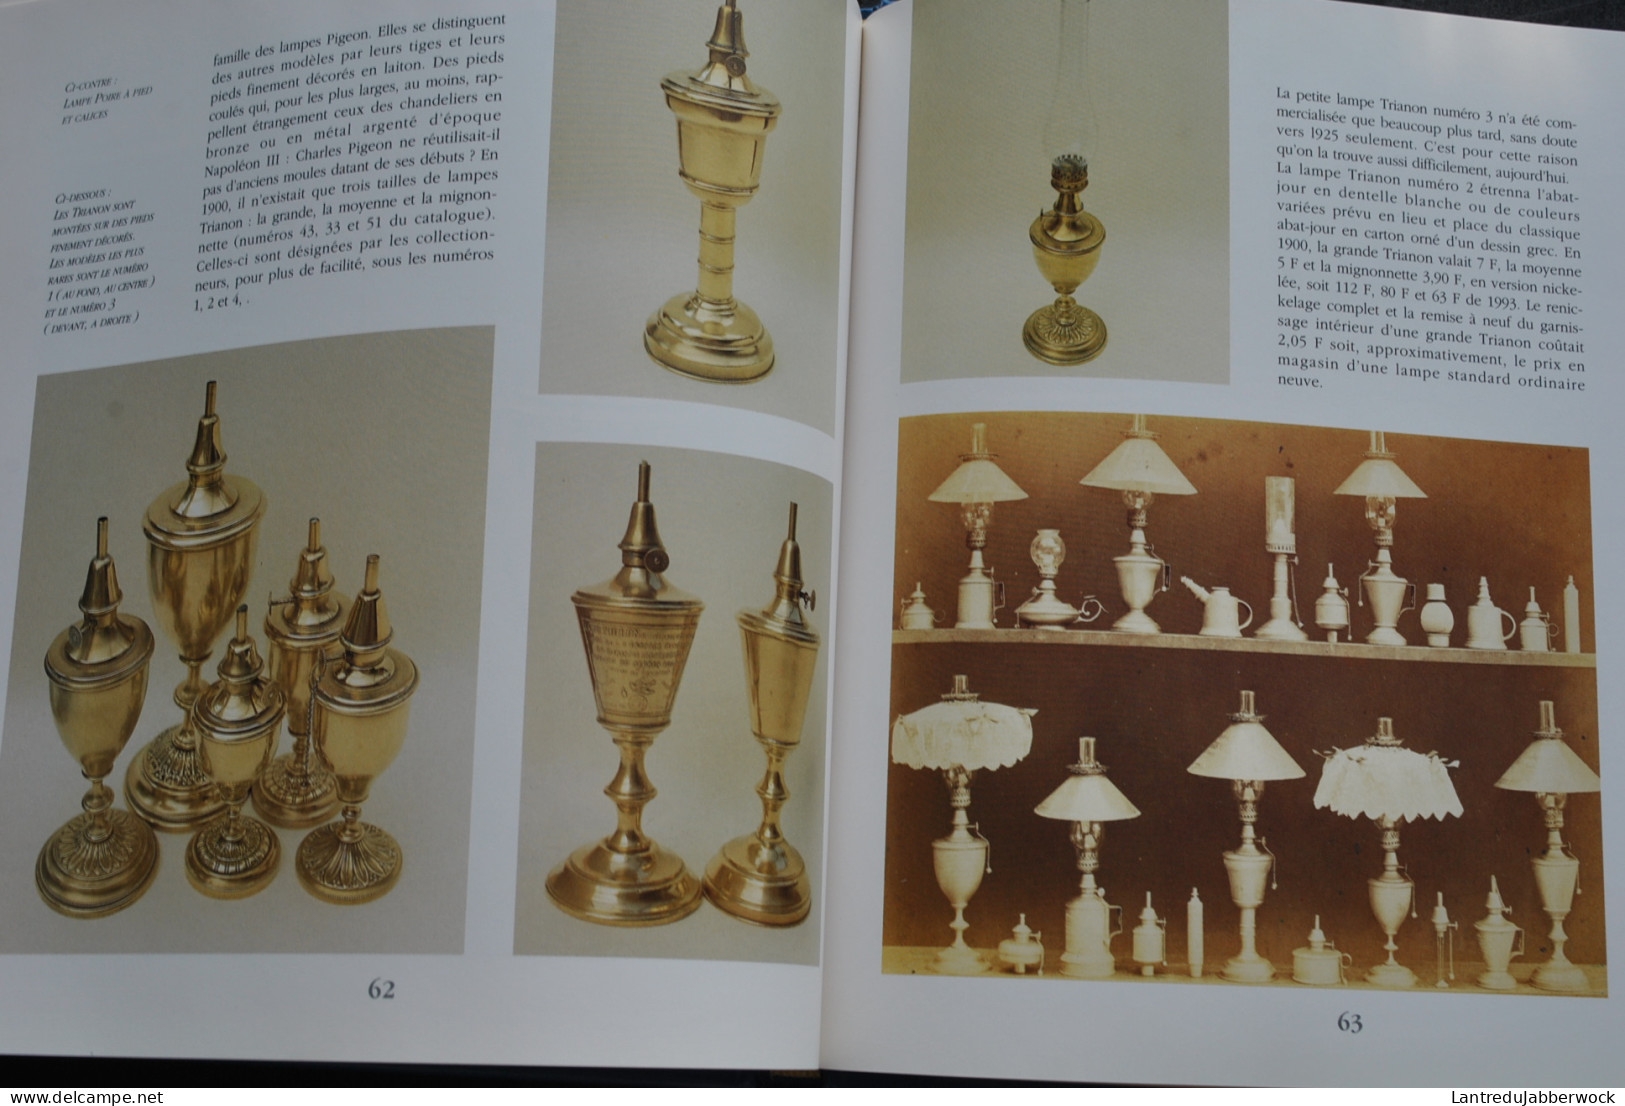 Charles PIGEON Lampes et Réchauds Editions du Collectionneur 1993 - Fonte moulée lampe de sécurité cuivre merveilleuse